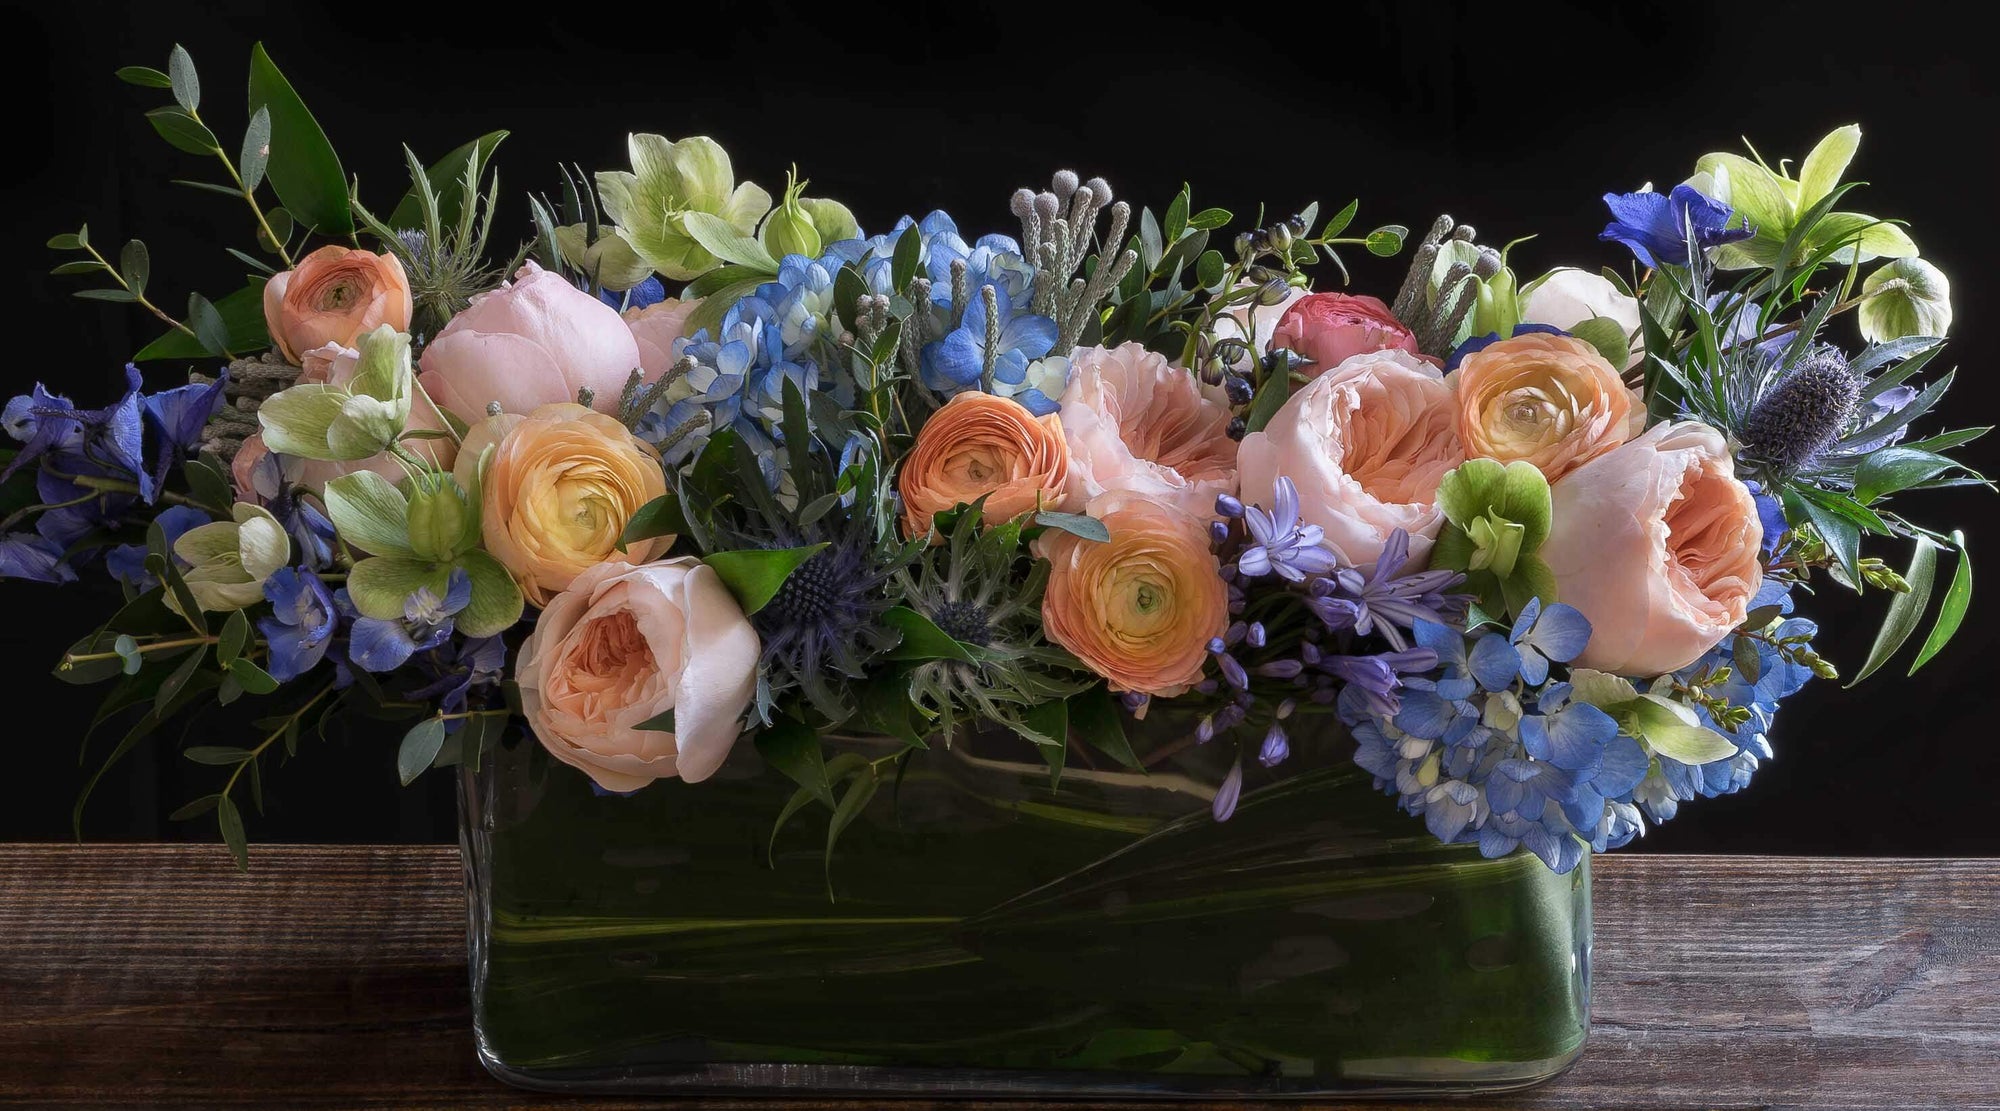 Colorful luxury boutique floral arrangement using the best premium flowers - blush, blue, orange,  flowers